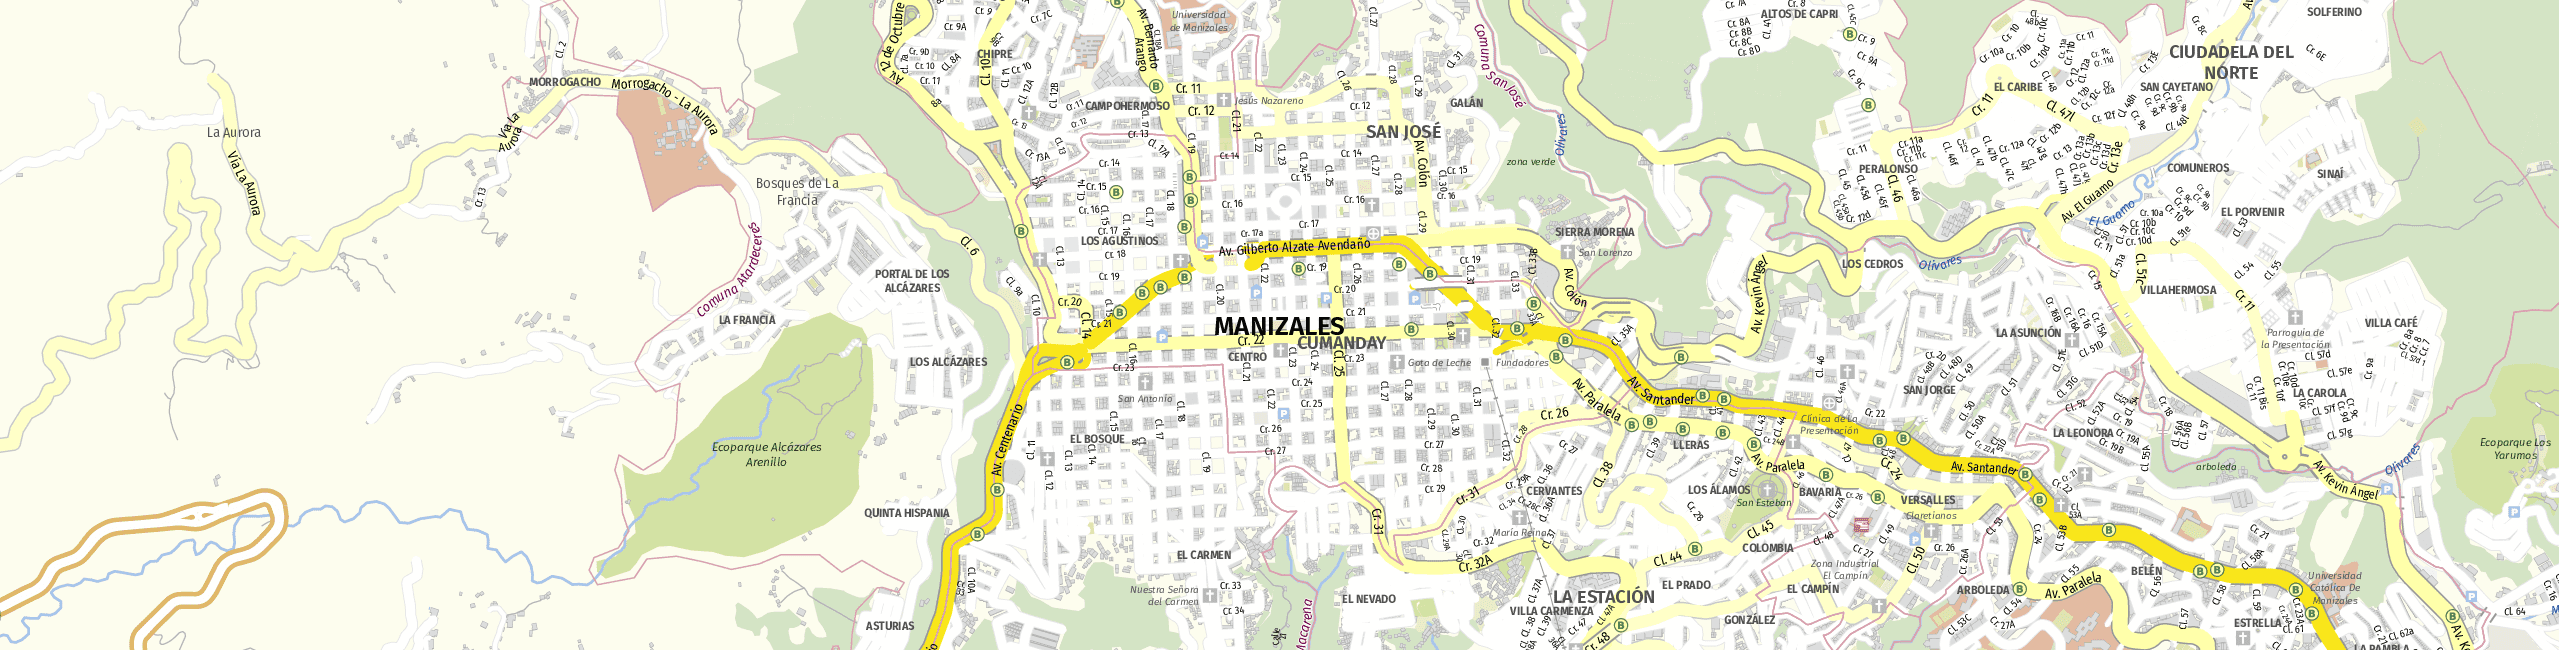 Stadtplan Manizales zum Downloaden.